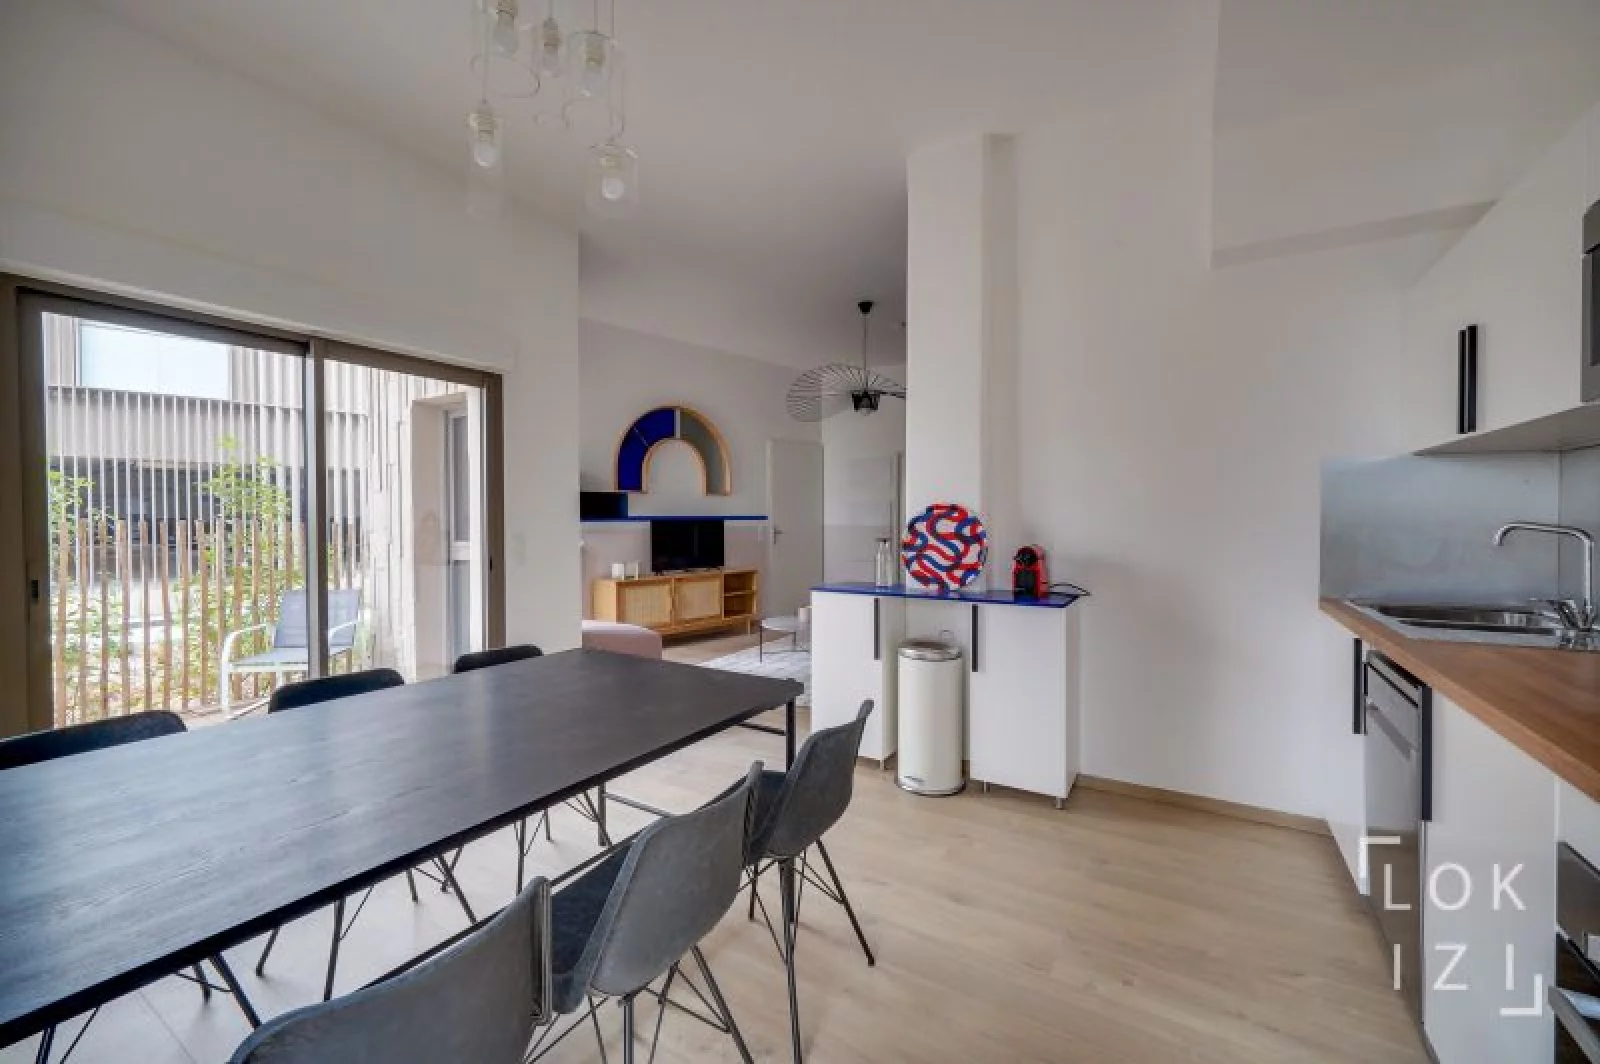 Location appartement meublé 4 pièces 80m² (Bordeaux - Belcier / Gare St Jean)